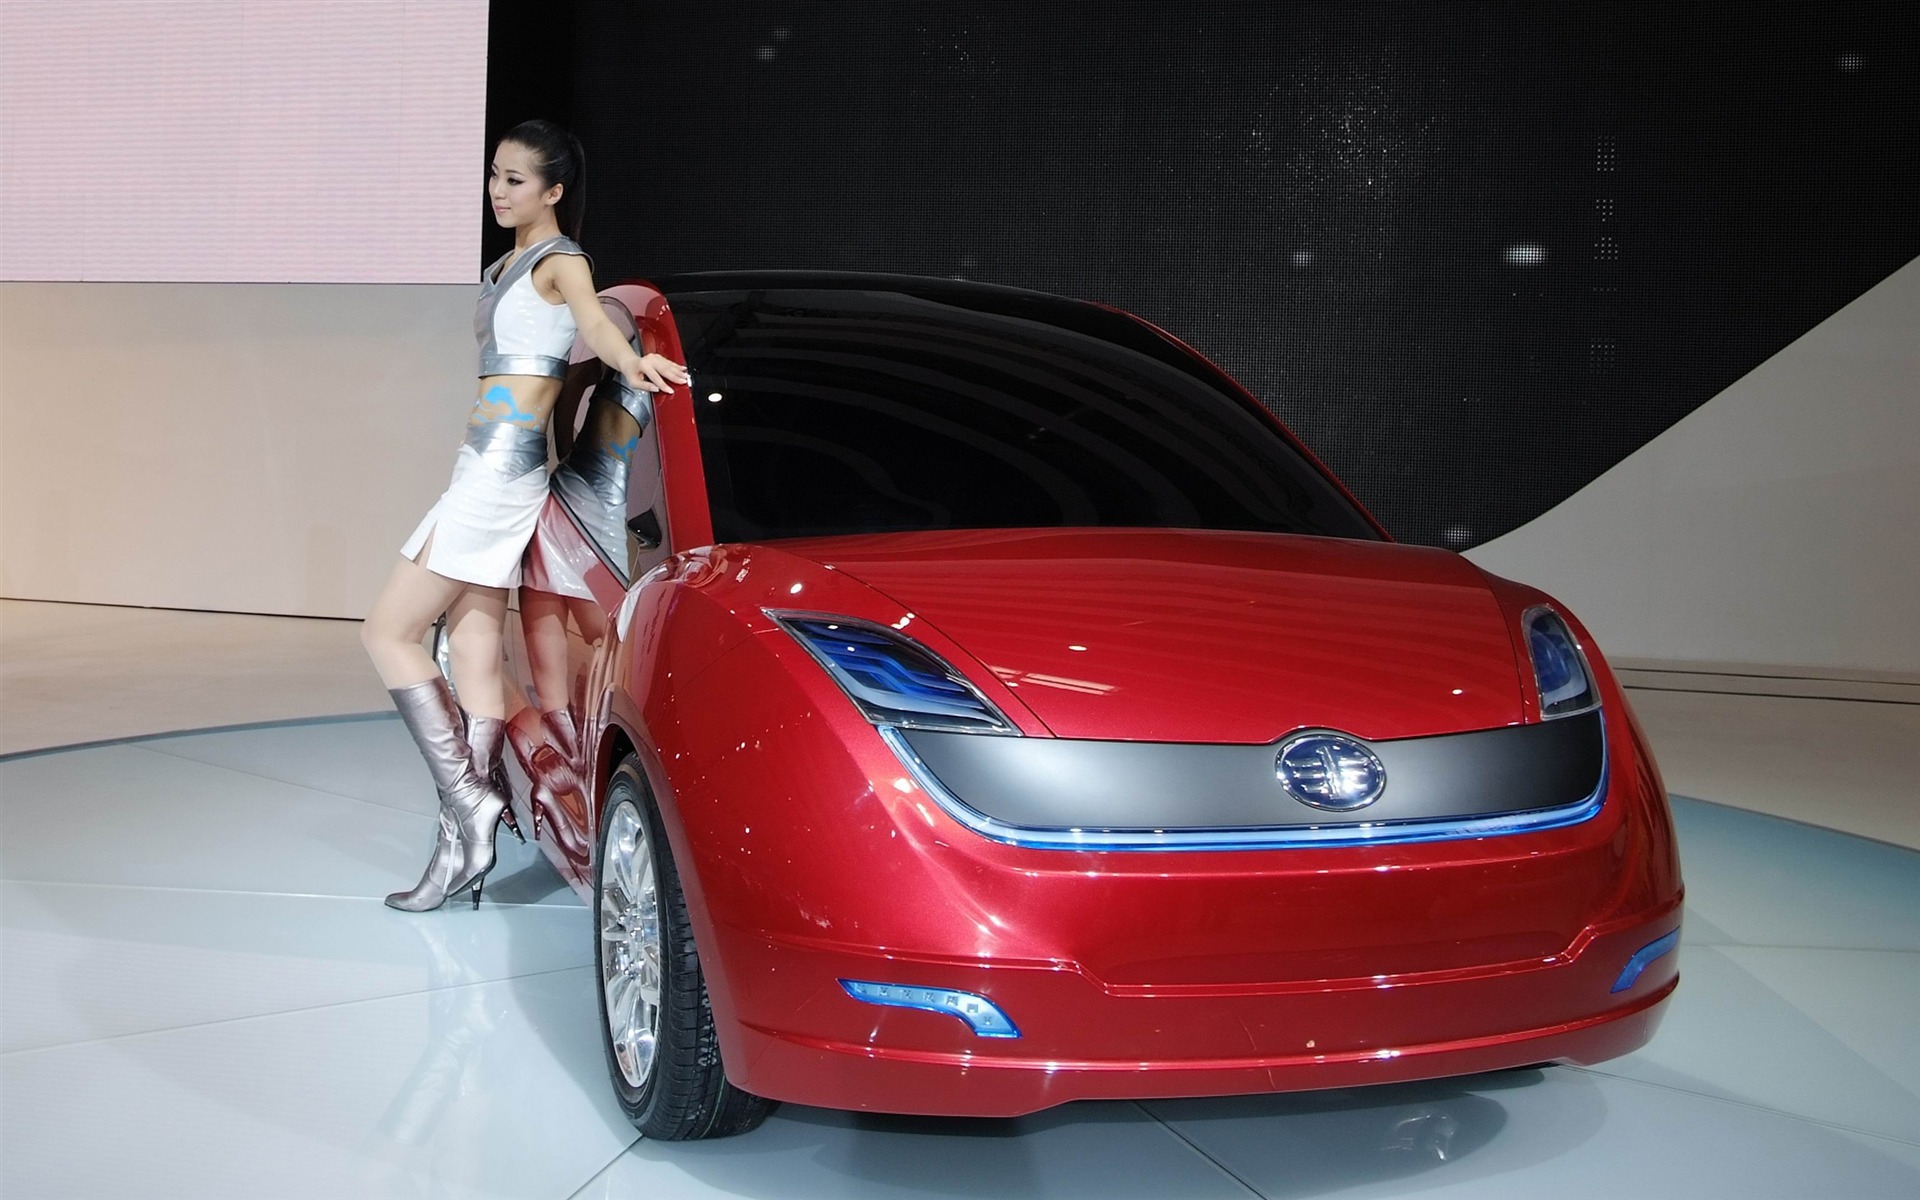 2010北京国际车展 香车美女 (螺纹钢作品)24 - 1920x1200